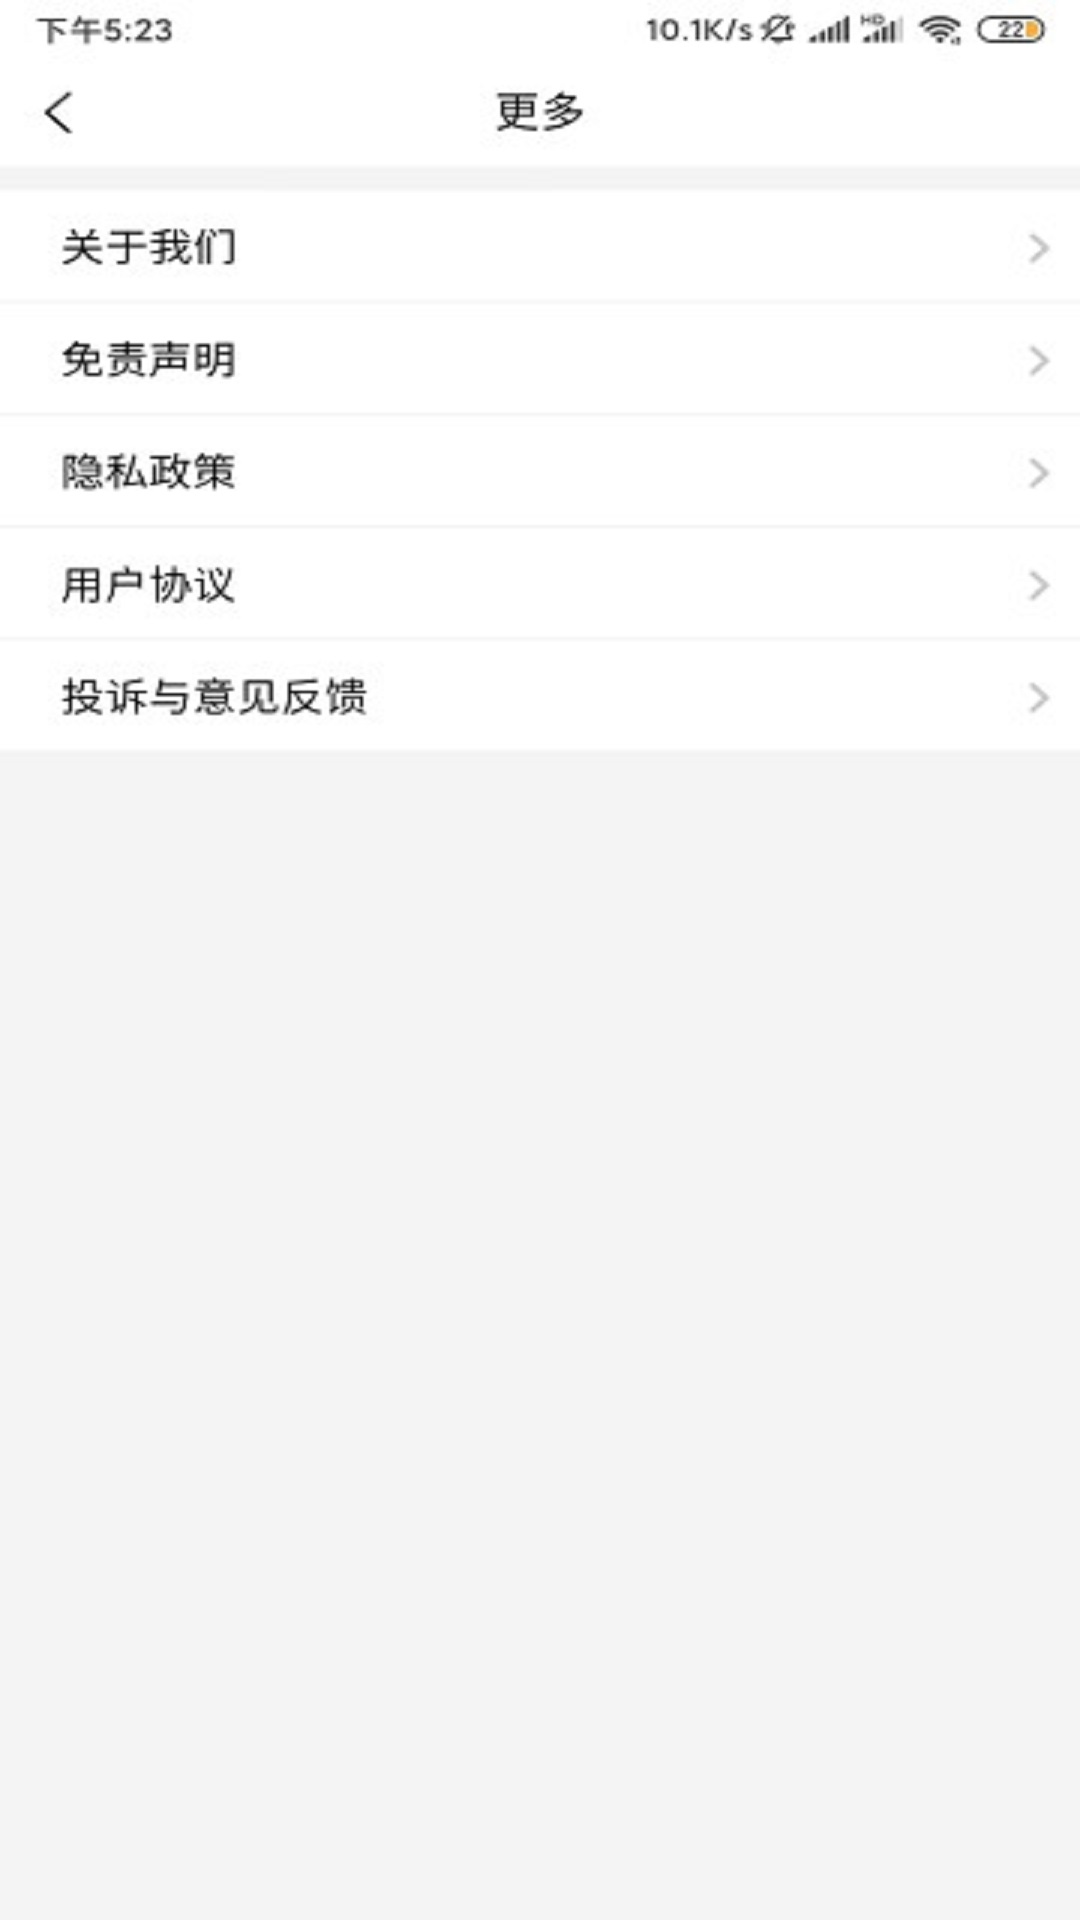 浙大儿院App最新版在线下载1.3.4